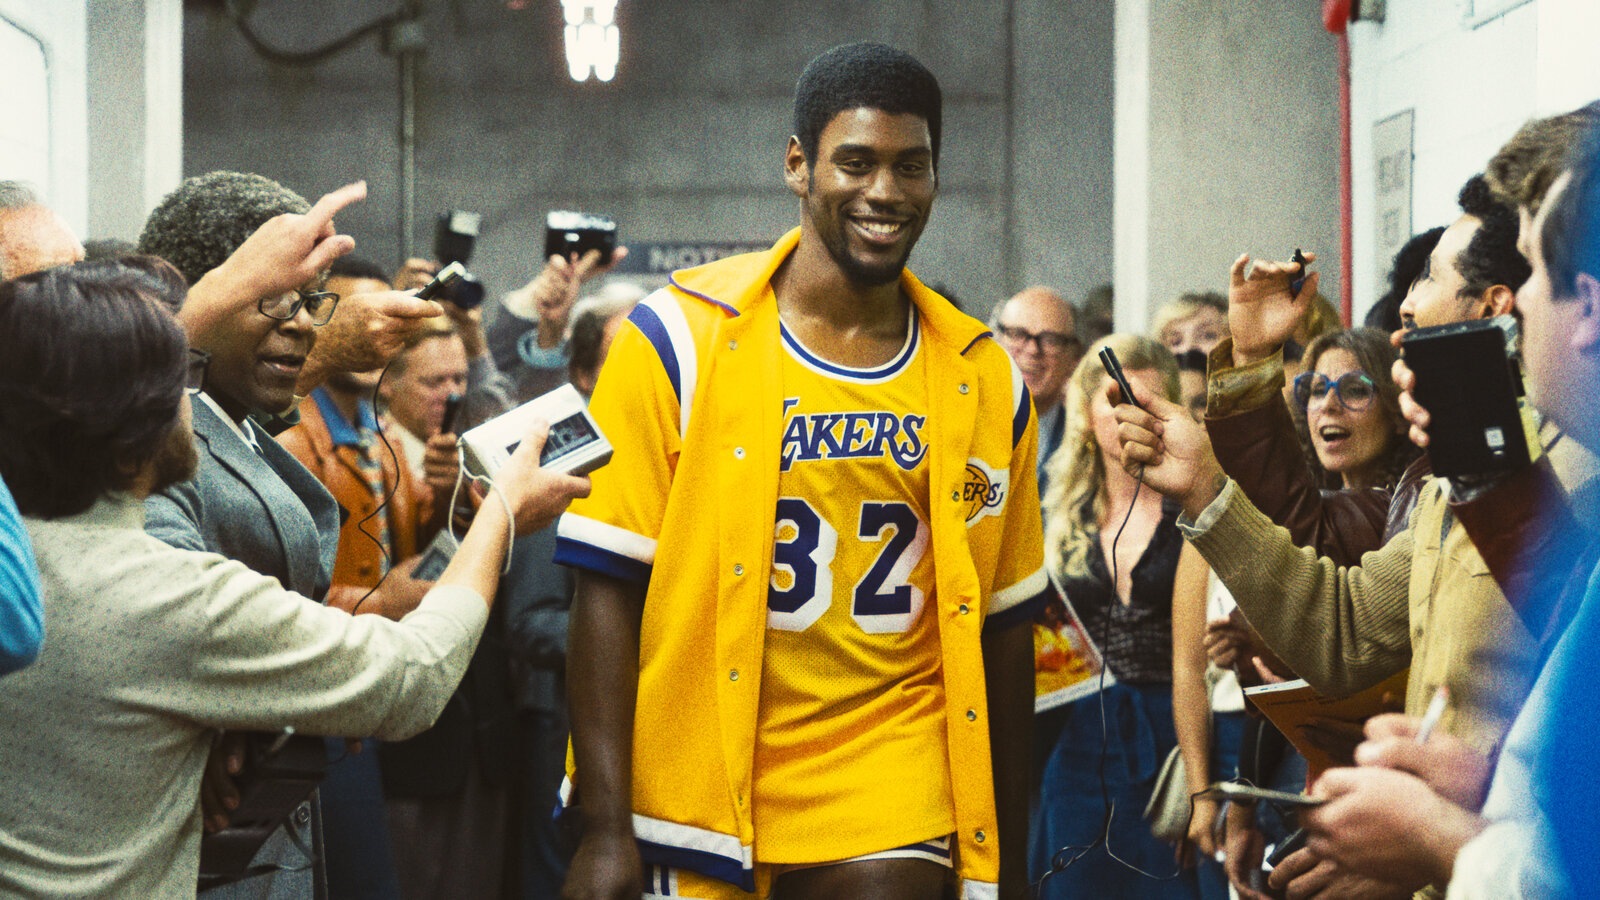 Winning Time: Sky ha svelato la data di uscita della seconda stagione della serie sui Lakers